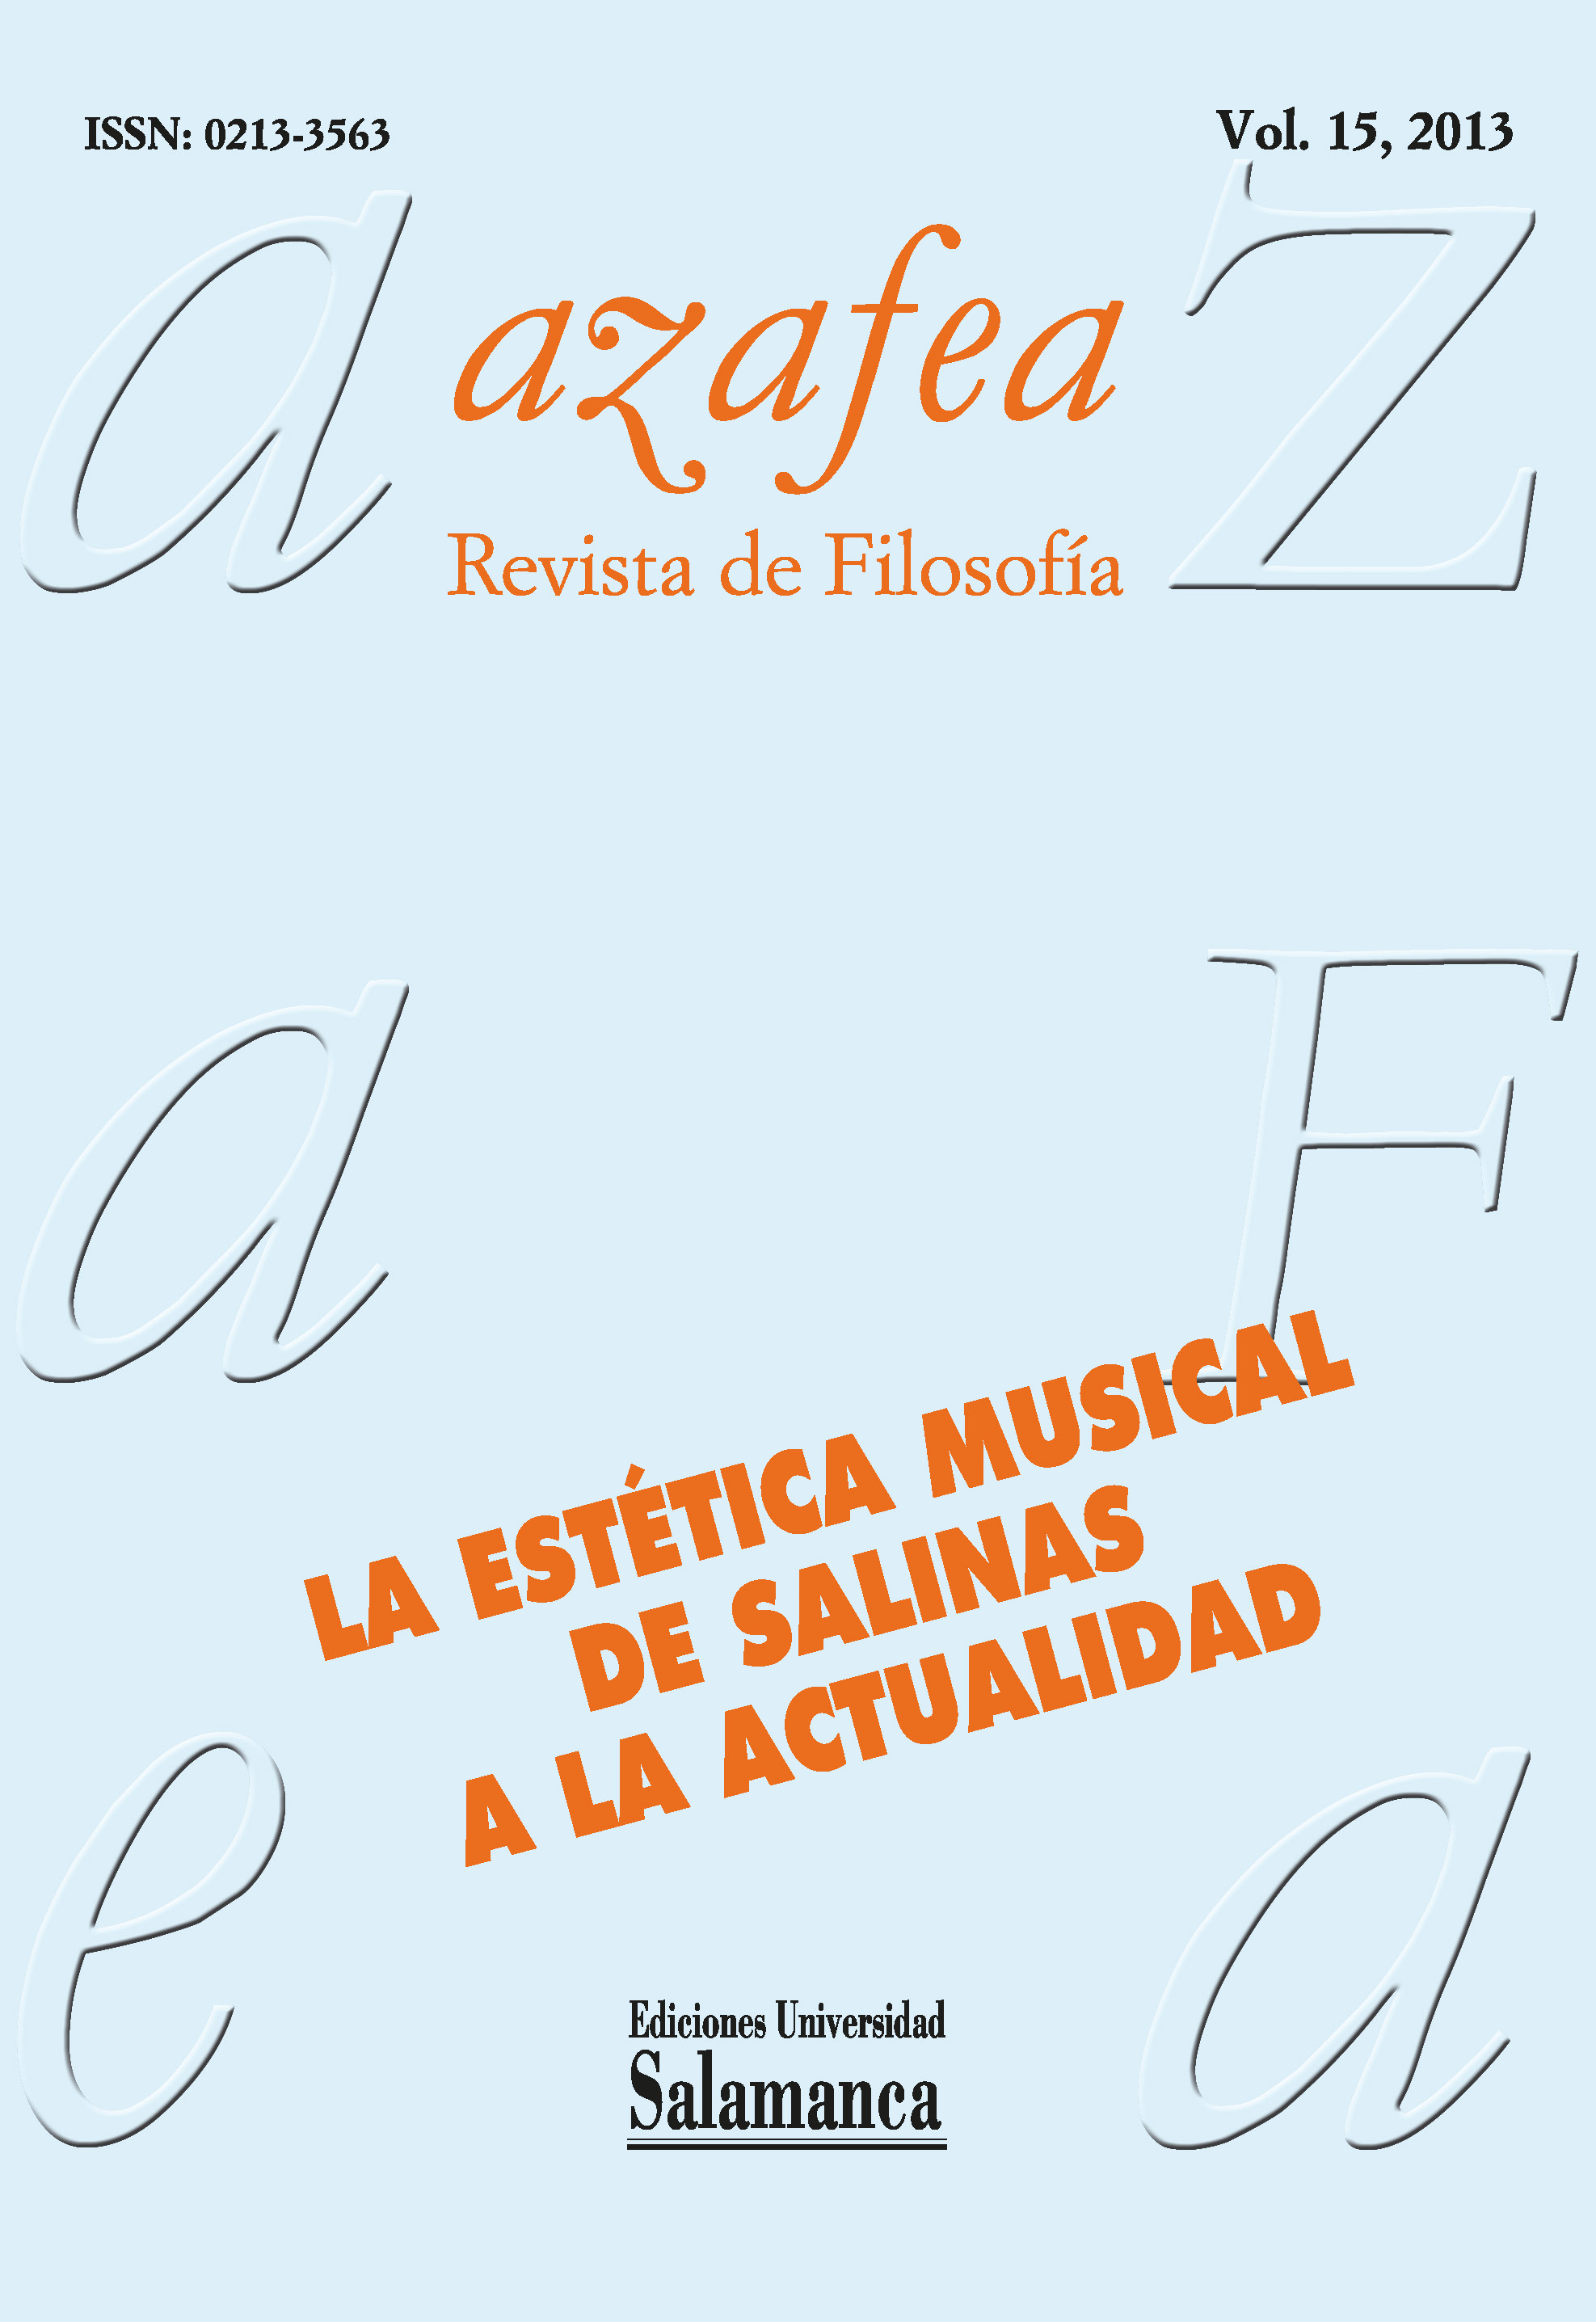                         Ver Vol. 15 (2013): La estética musical de Salinas a la actualidad
                    